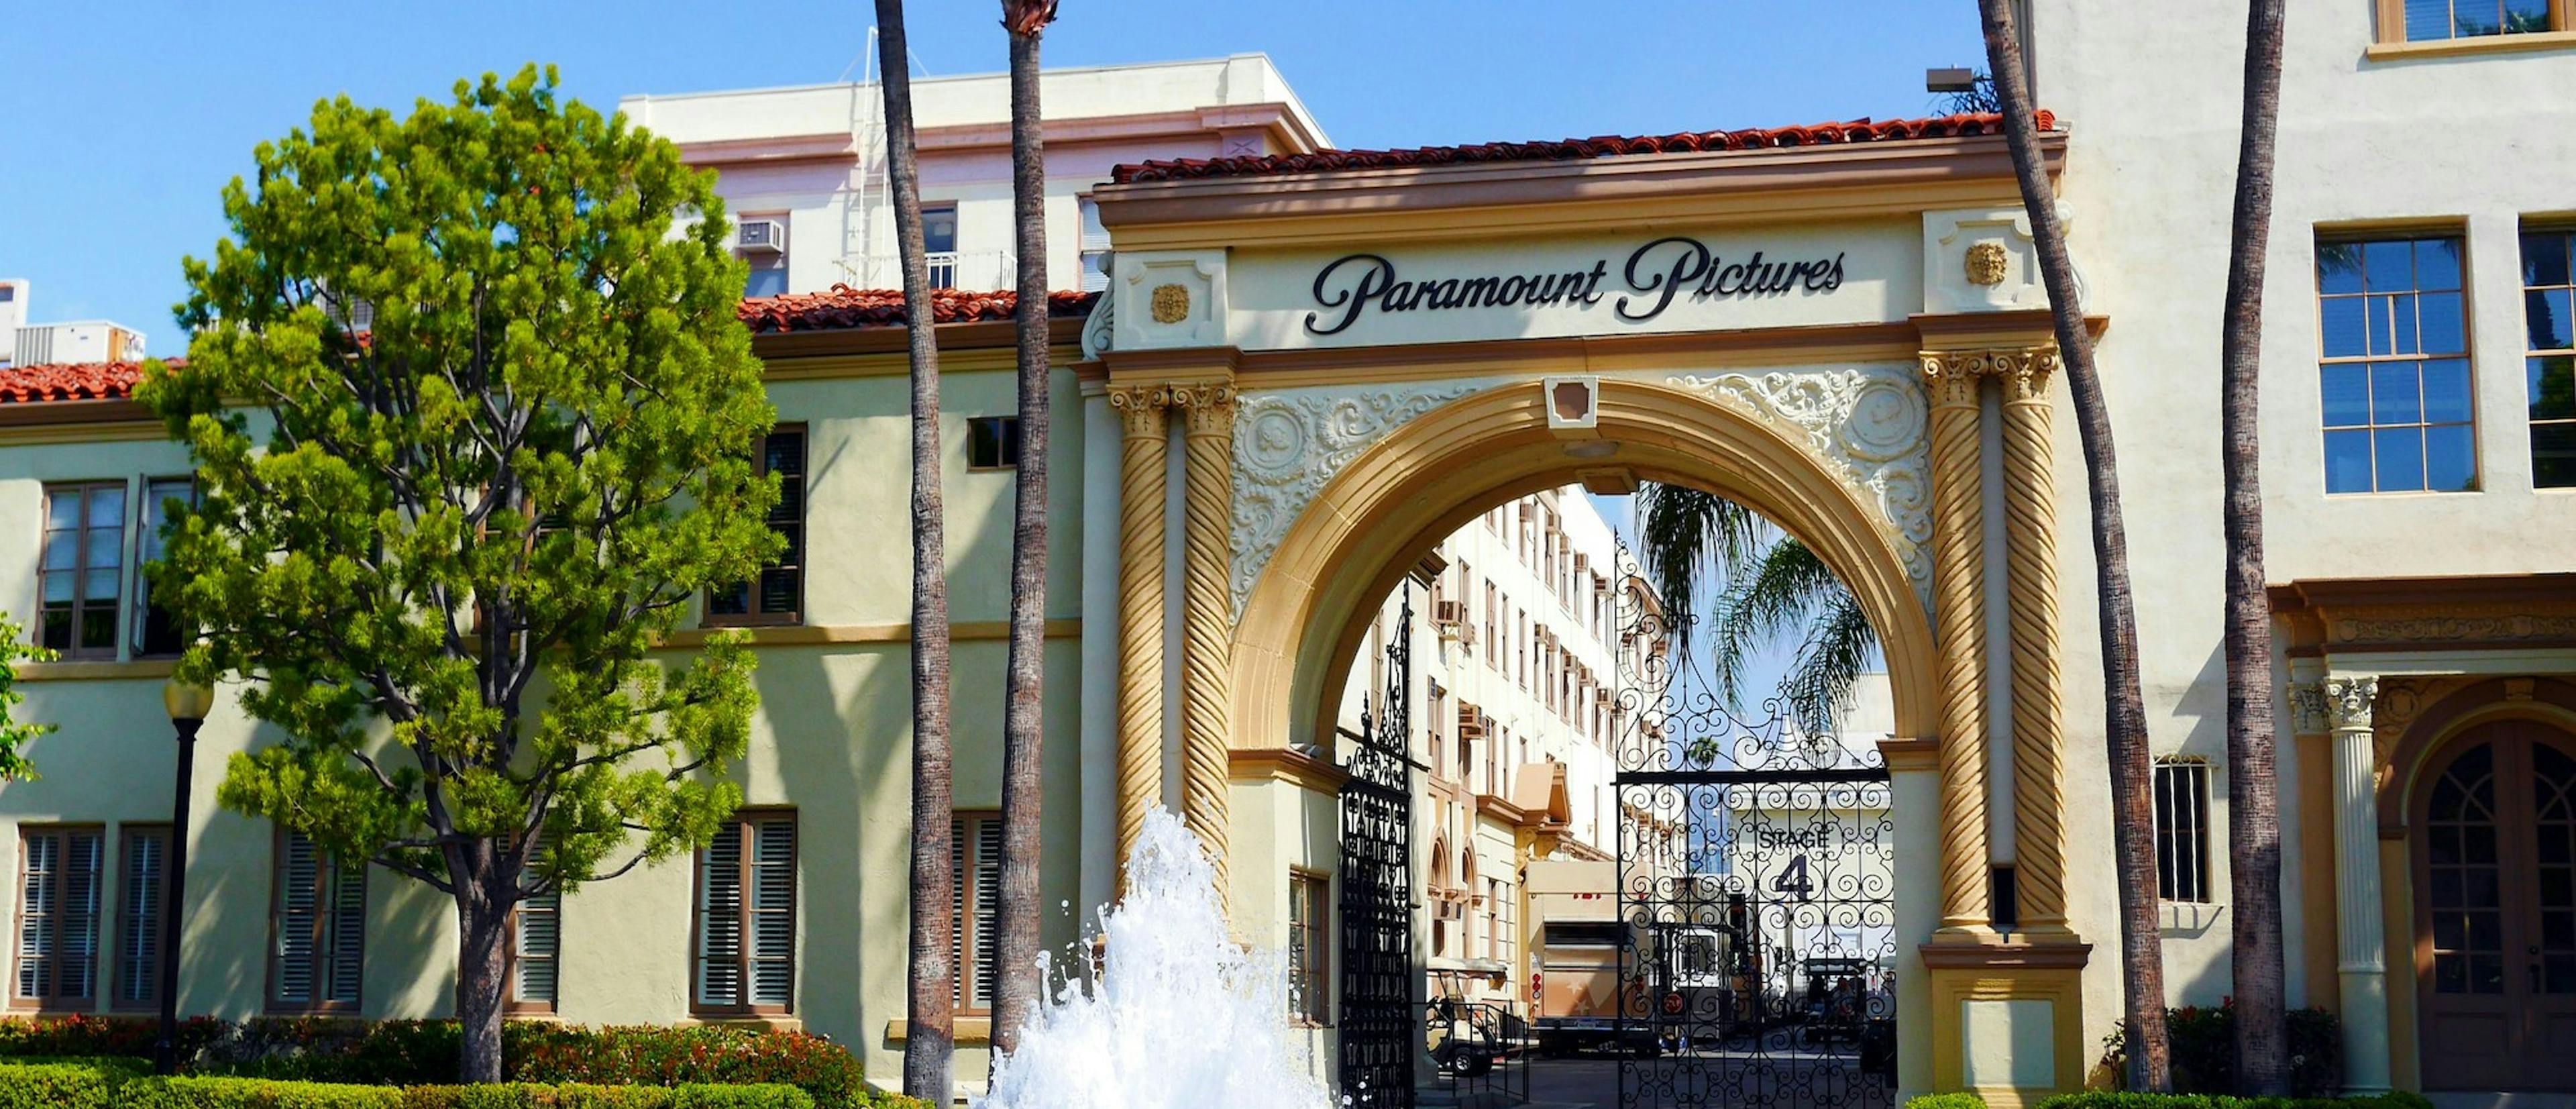 Entrada de los estudios de Paramount en Los Angeles